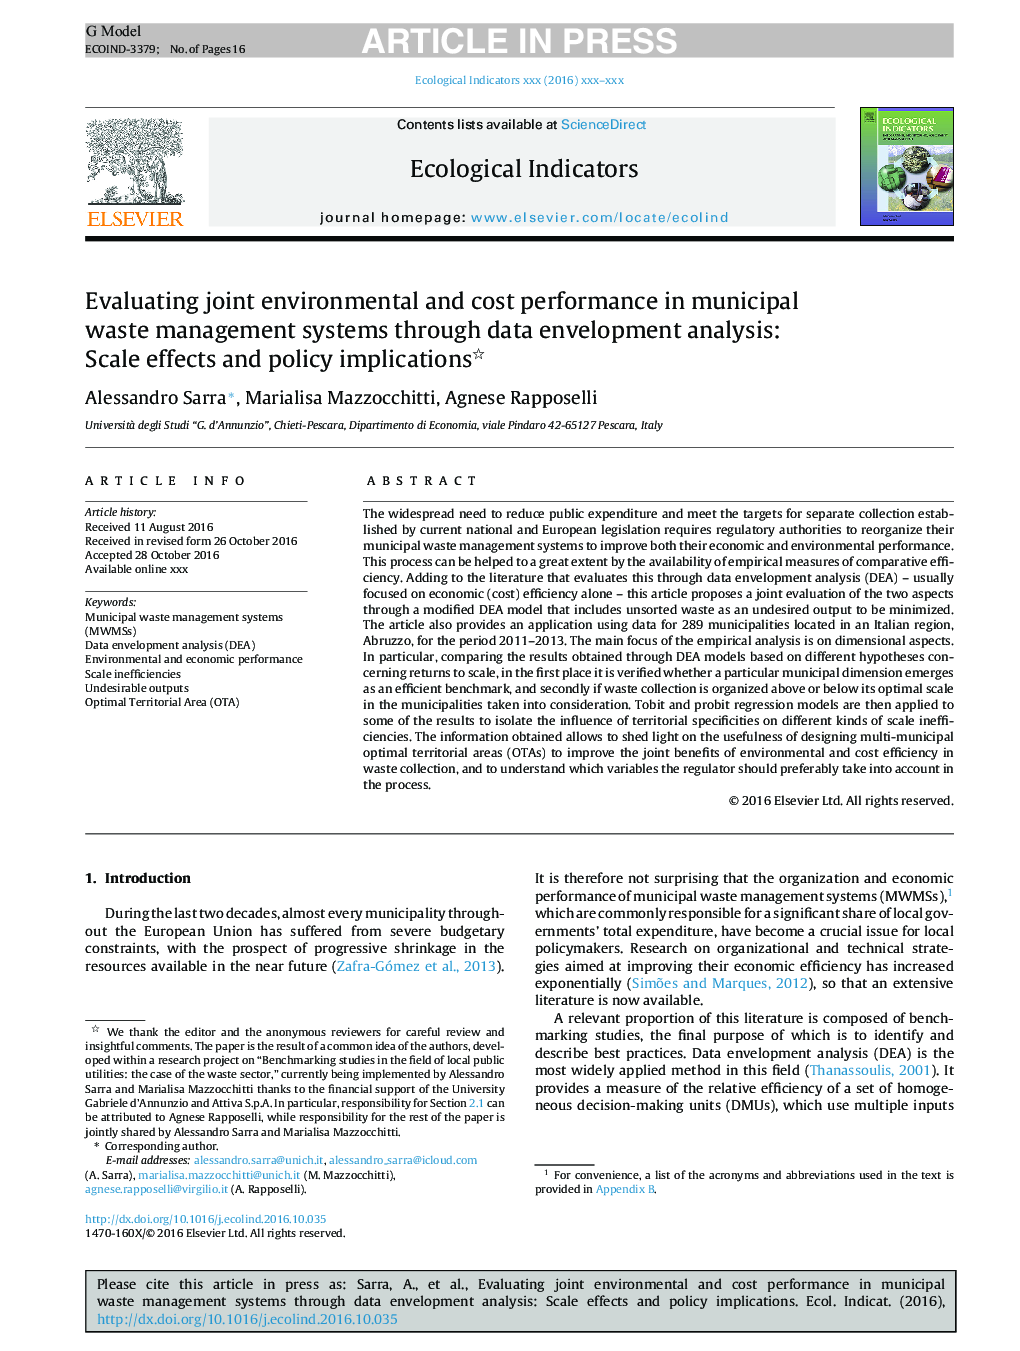 ارزیابی عملکرد مشترک محیطی و هزینه در سیستم های مدیریت زباله شهری از طریق تجزیه و تحلیل پوشش داده ها: اثرات مقیاس و پیامدهای سیاست